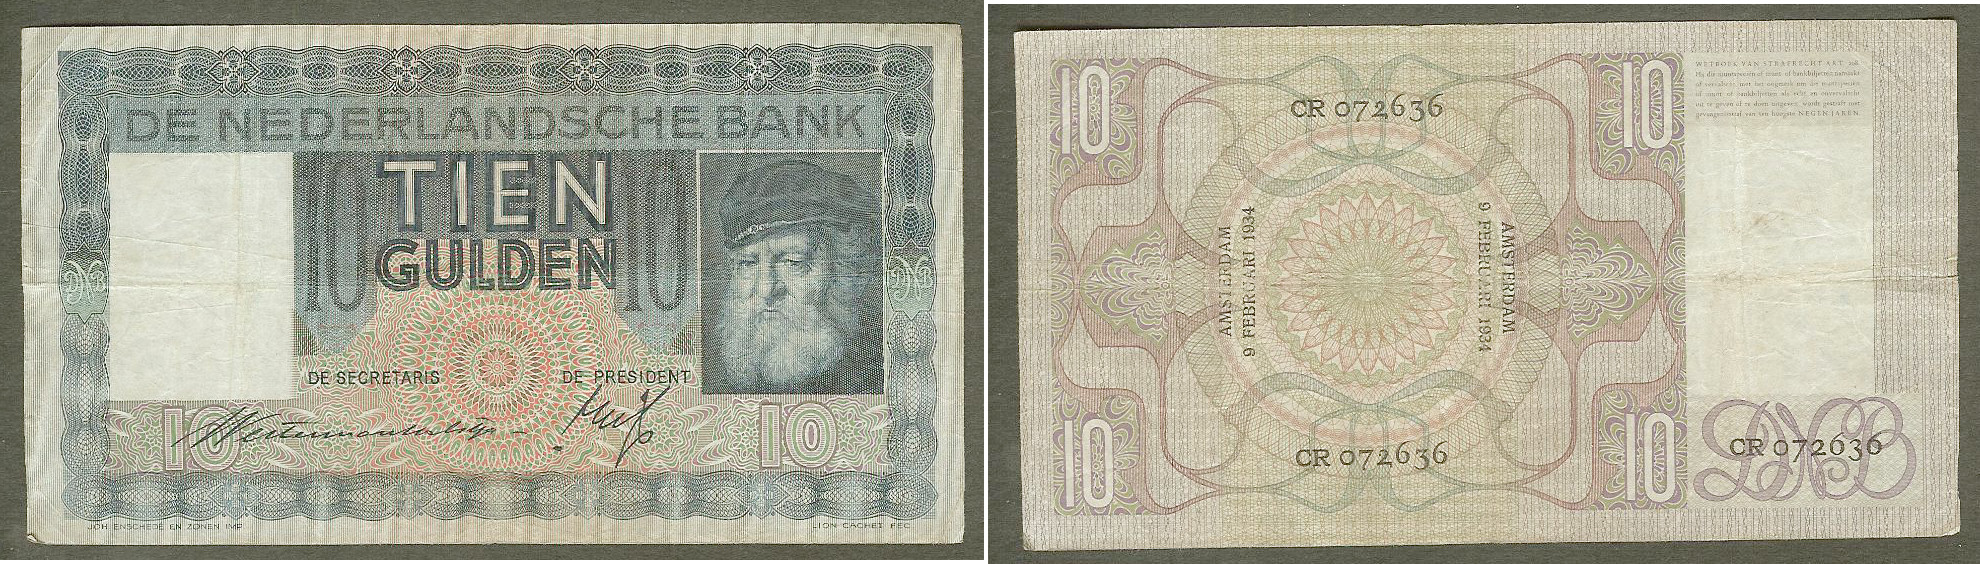 10 Gulden PAYS-BAS 9.2.1934 TB+